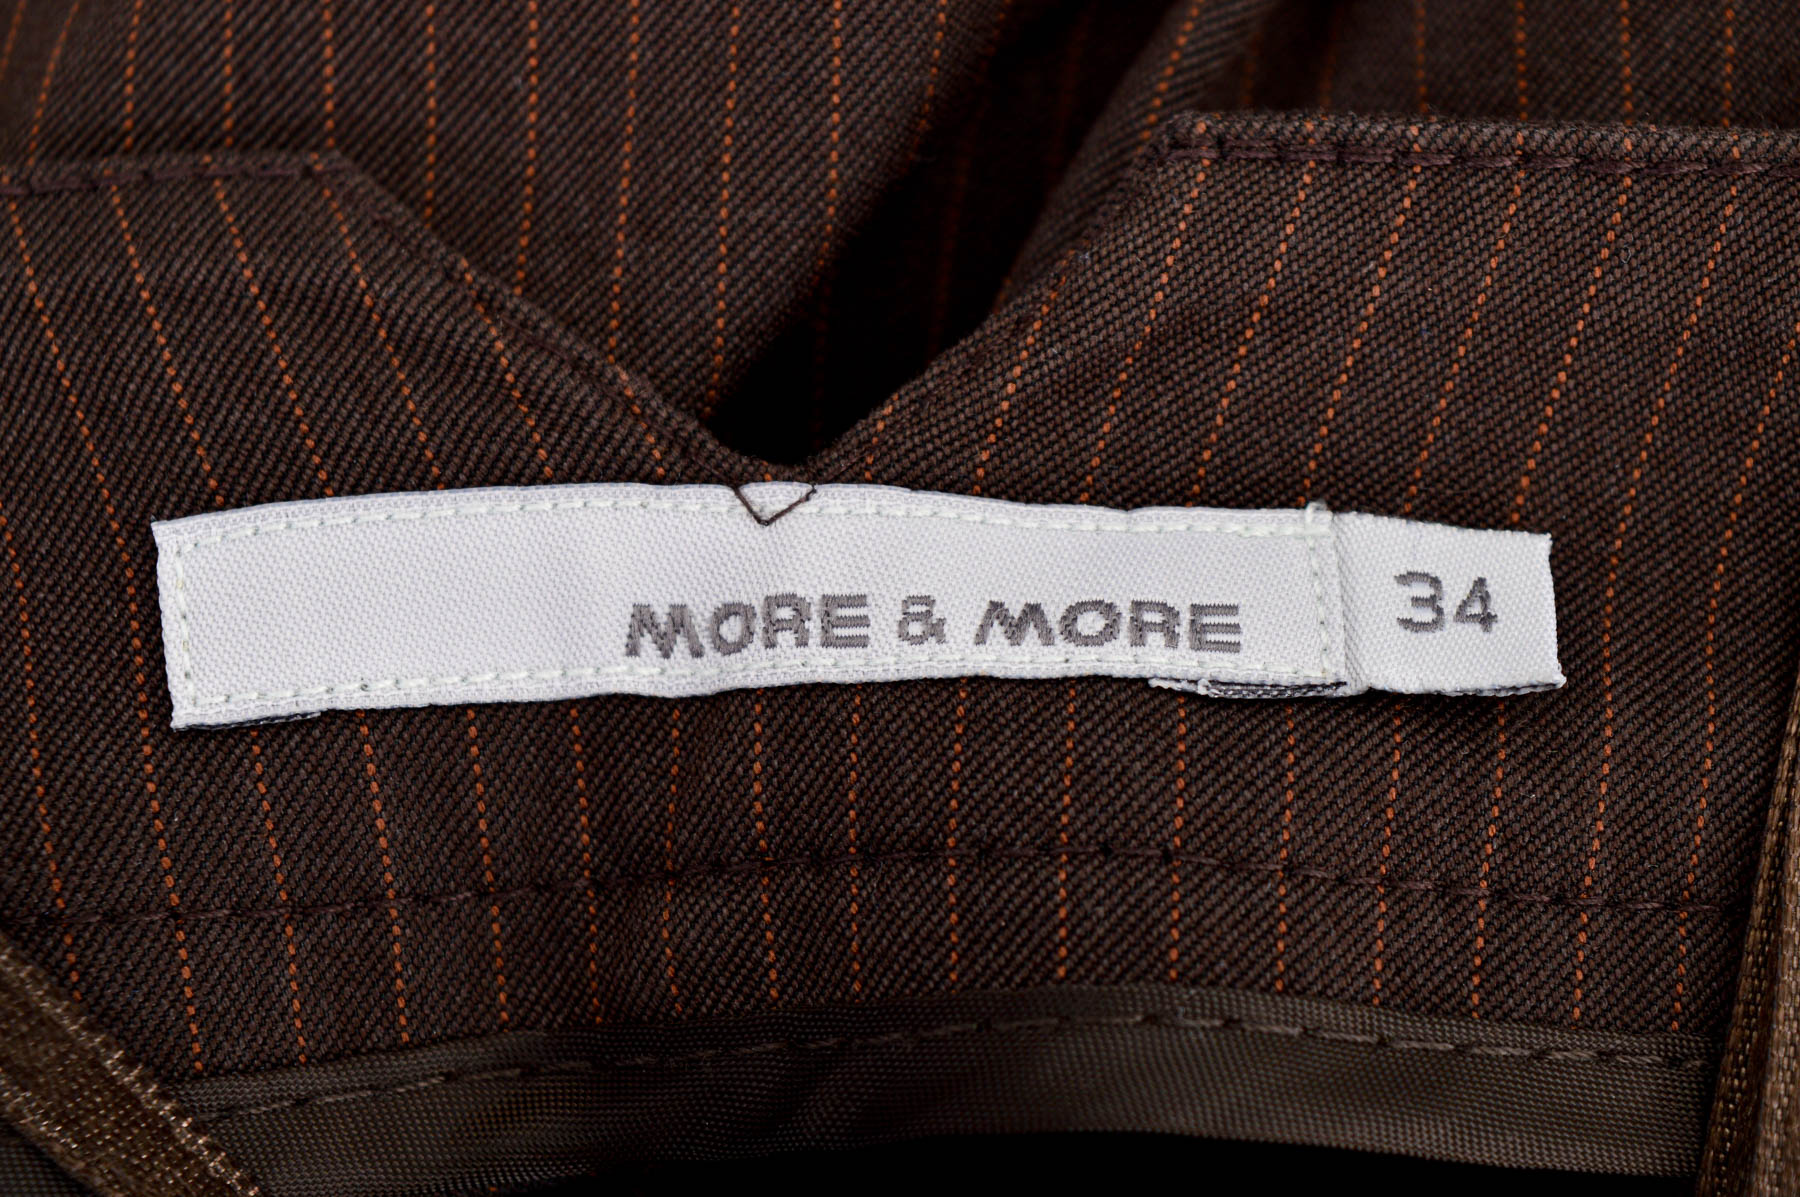 Krótkie spodnie damskie - More & More - 2